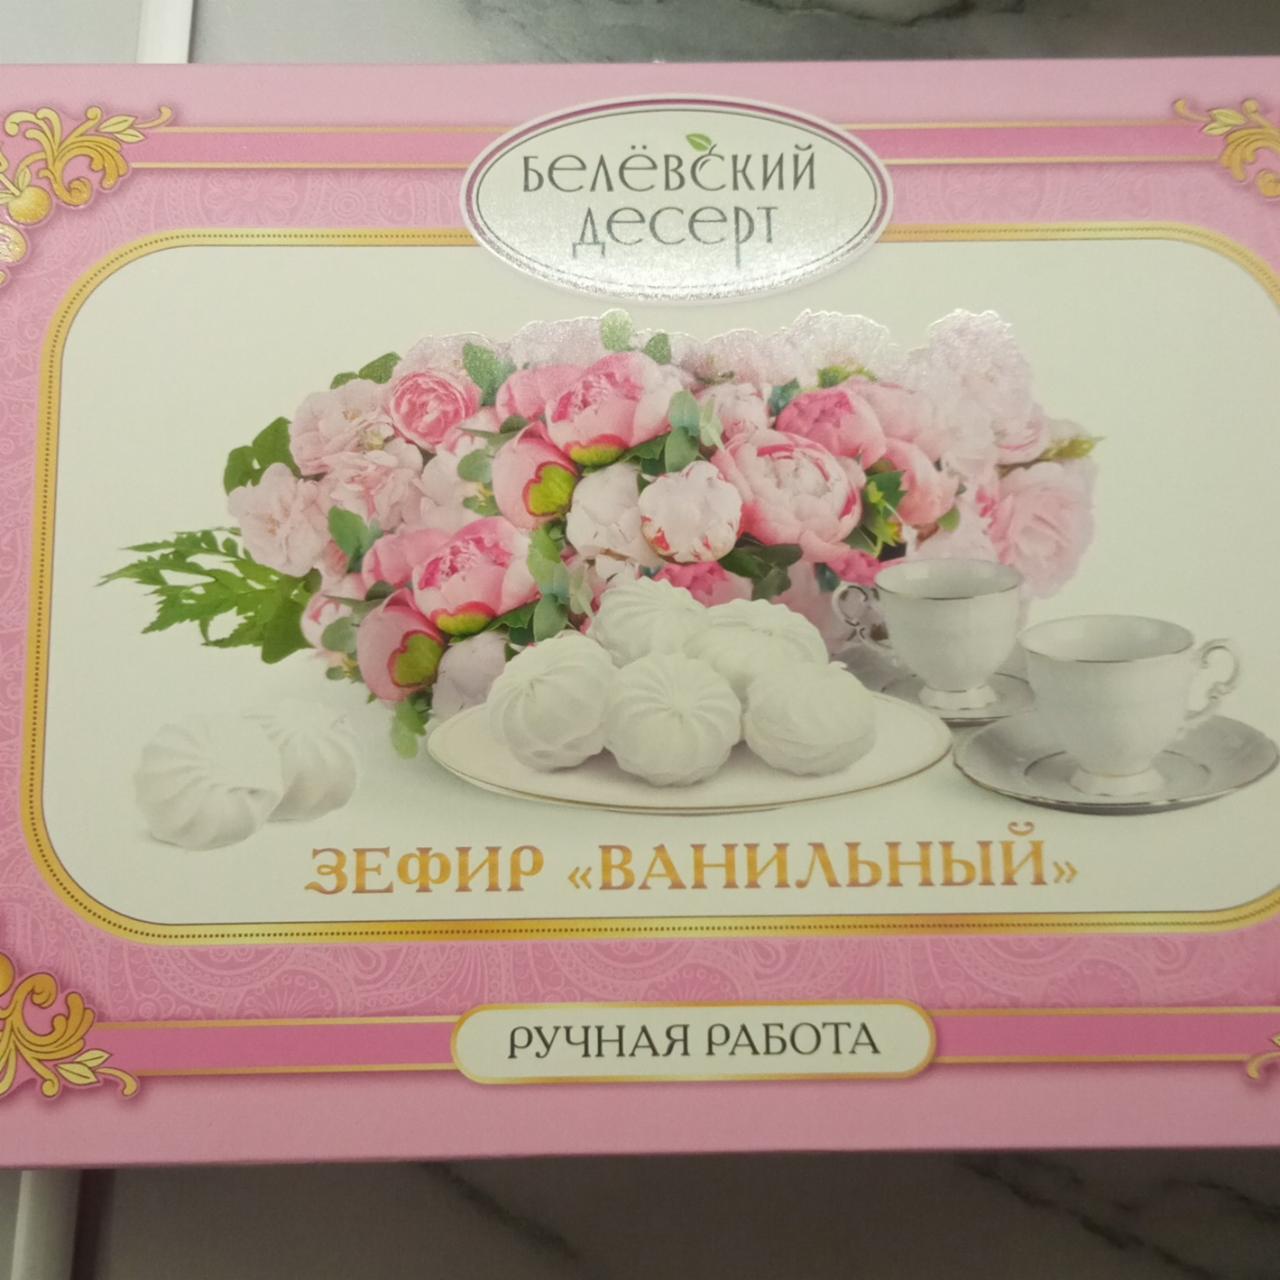 Фото - Зефир ванильный Белёвский десерт